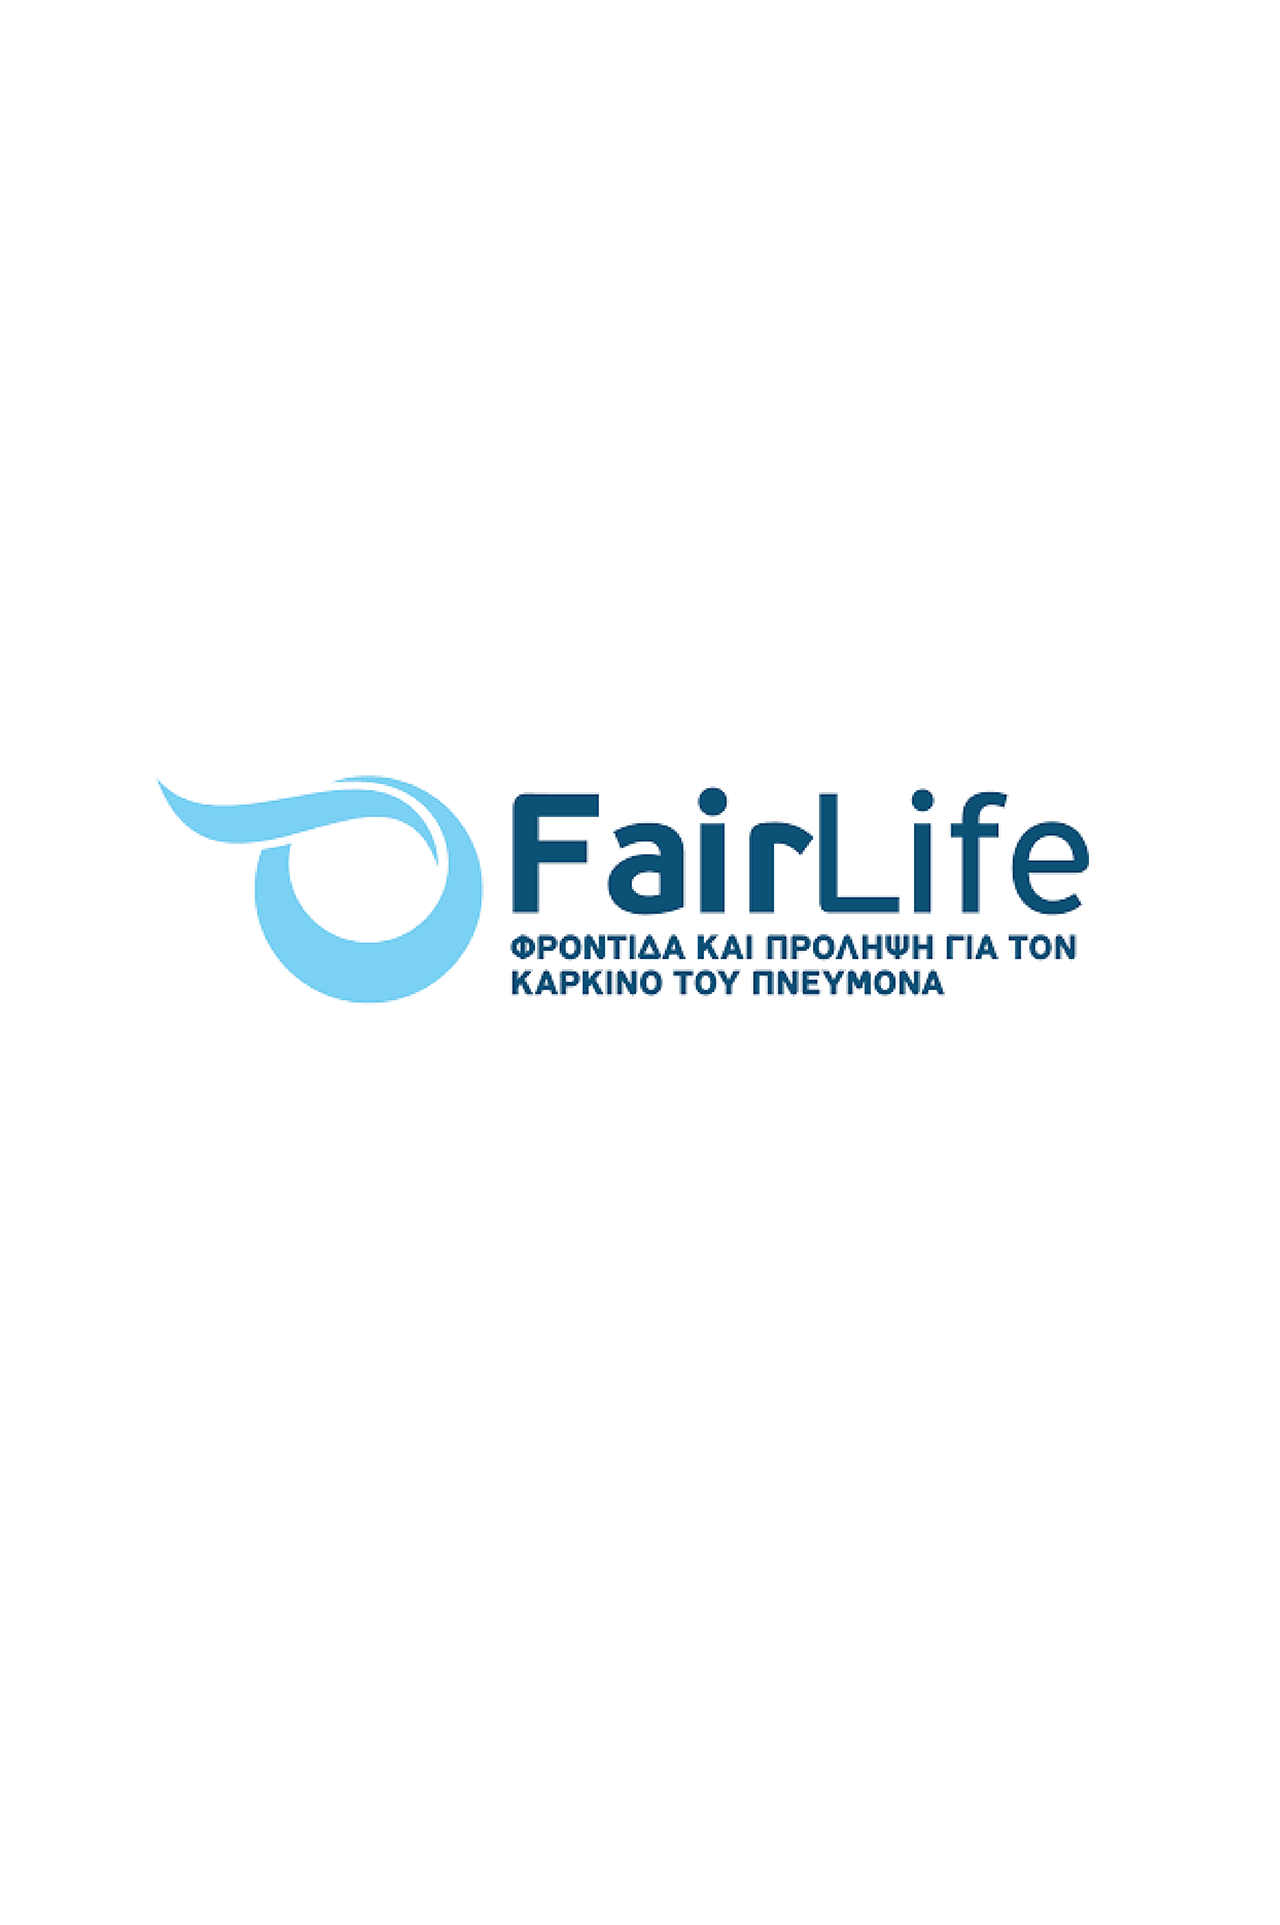 FairLife logo